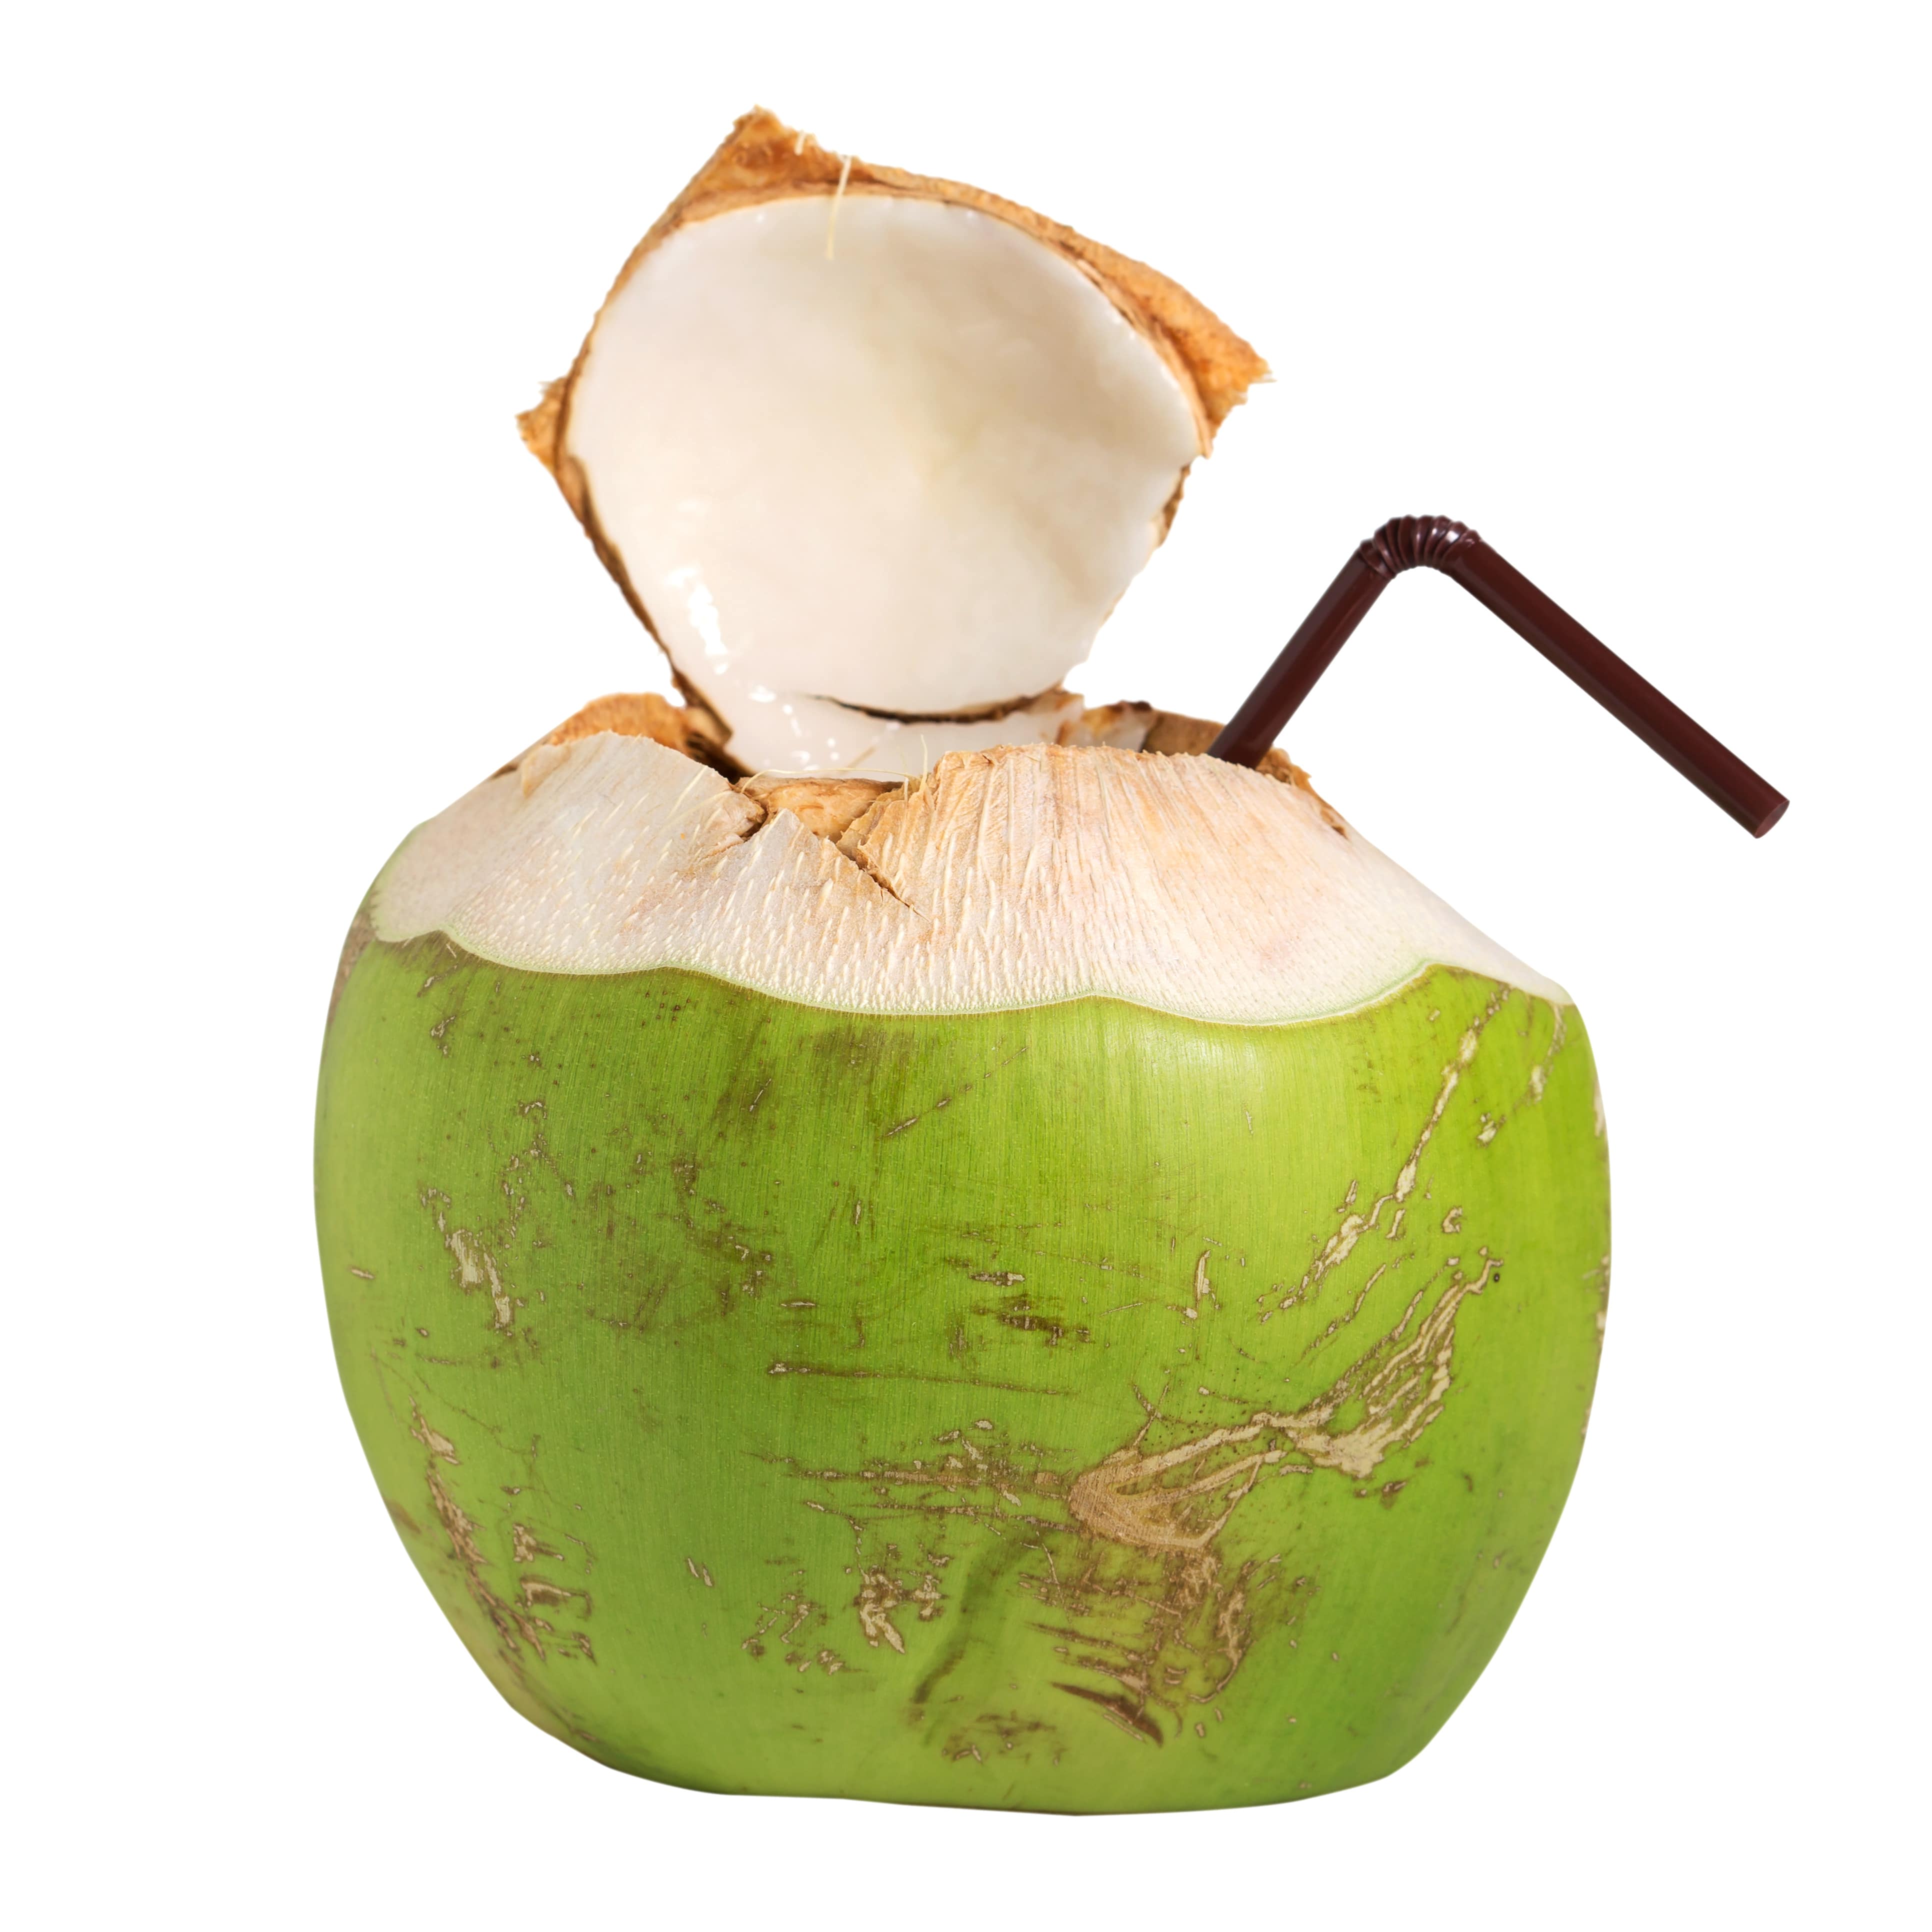 Pourquoi boire de l’eau de coco ? Ses bienfaits